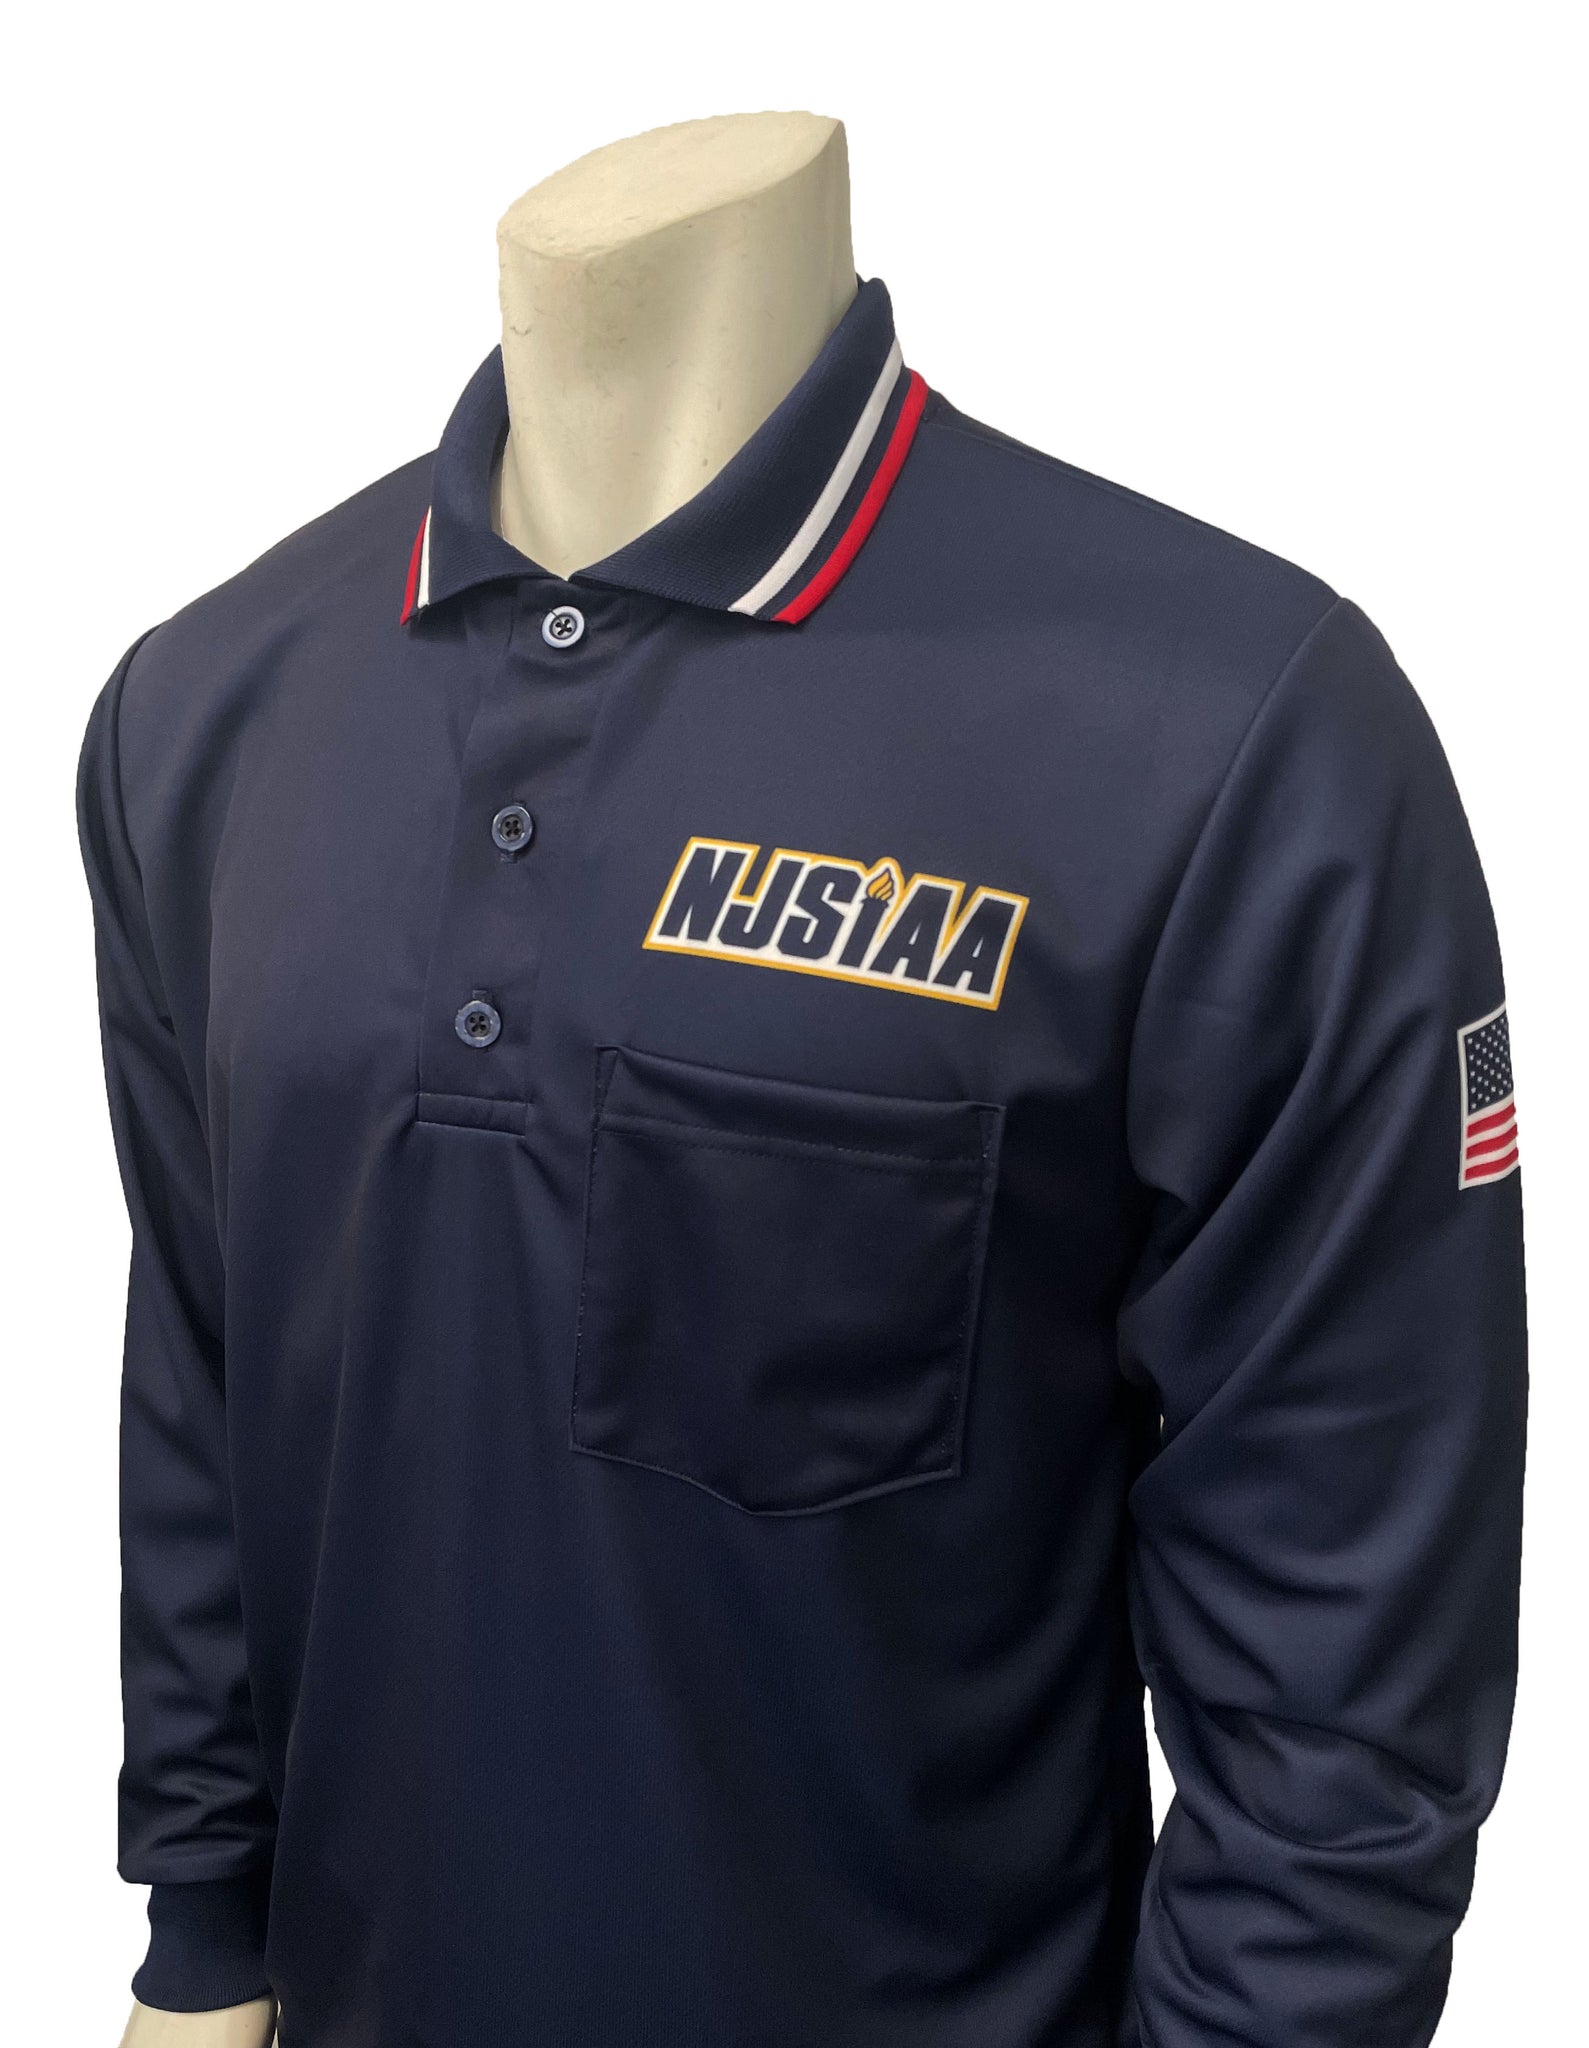 USA301NJ-NY - Smitty "Made in USA" - NJSIAA Men's Baseball/Softball Umpire Long Sleeve Shirt - Navy